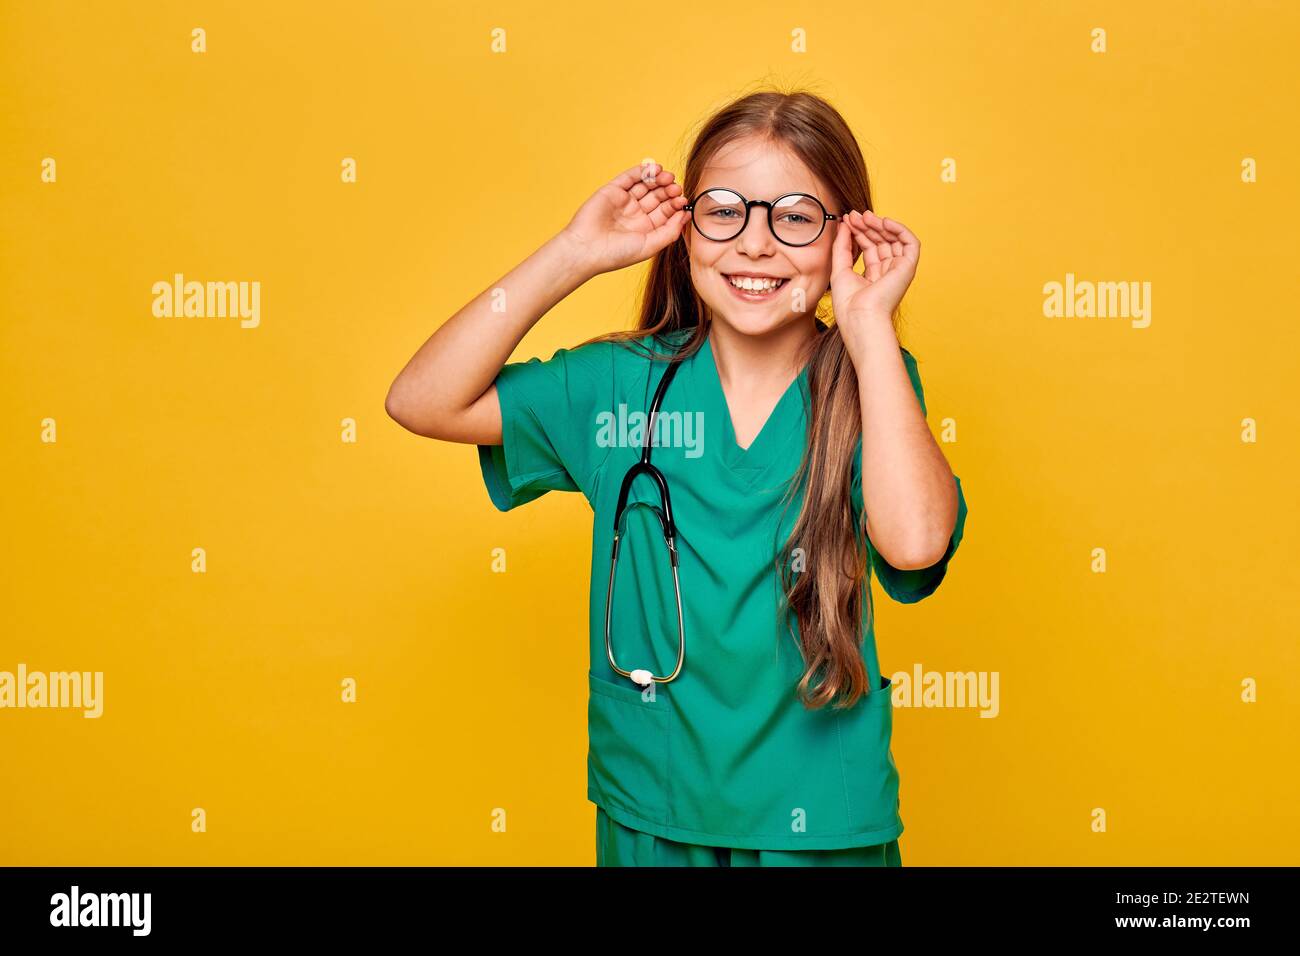 Mädchen trägt eine Brille, grüne medizinische Uniform und Stethoskop spielt einen medizinischen Beruf. Kind mit toothy Lächeln, zukünftige Arzt Stockfoto